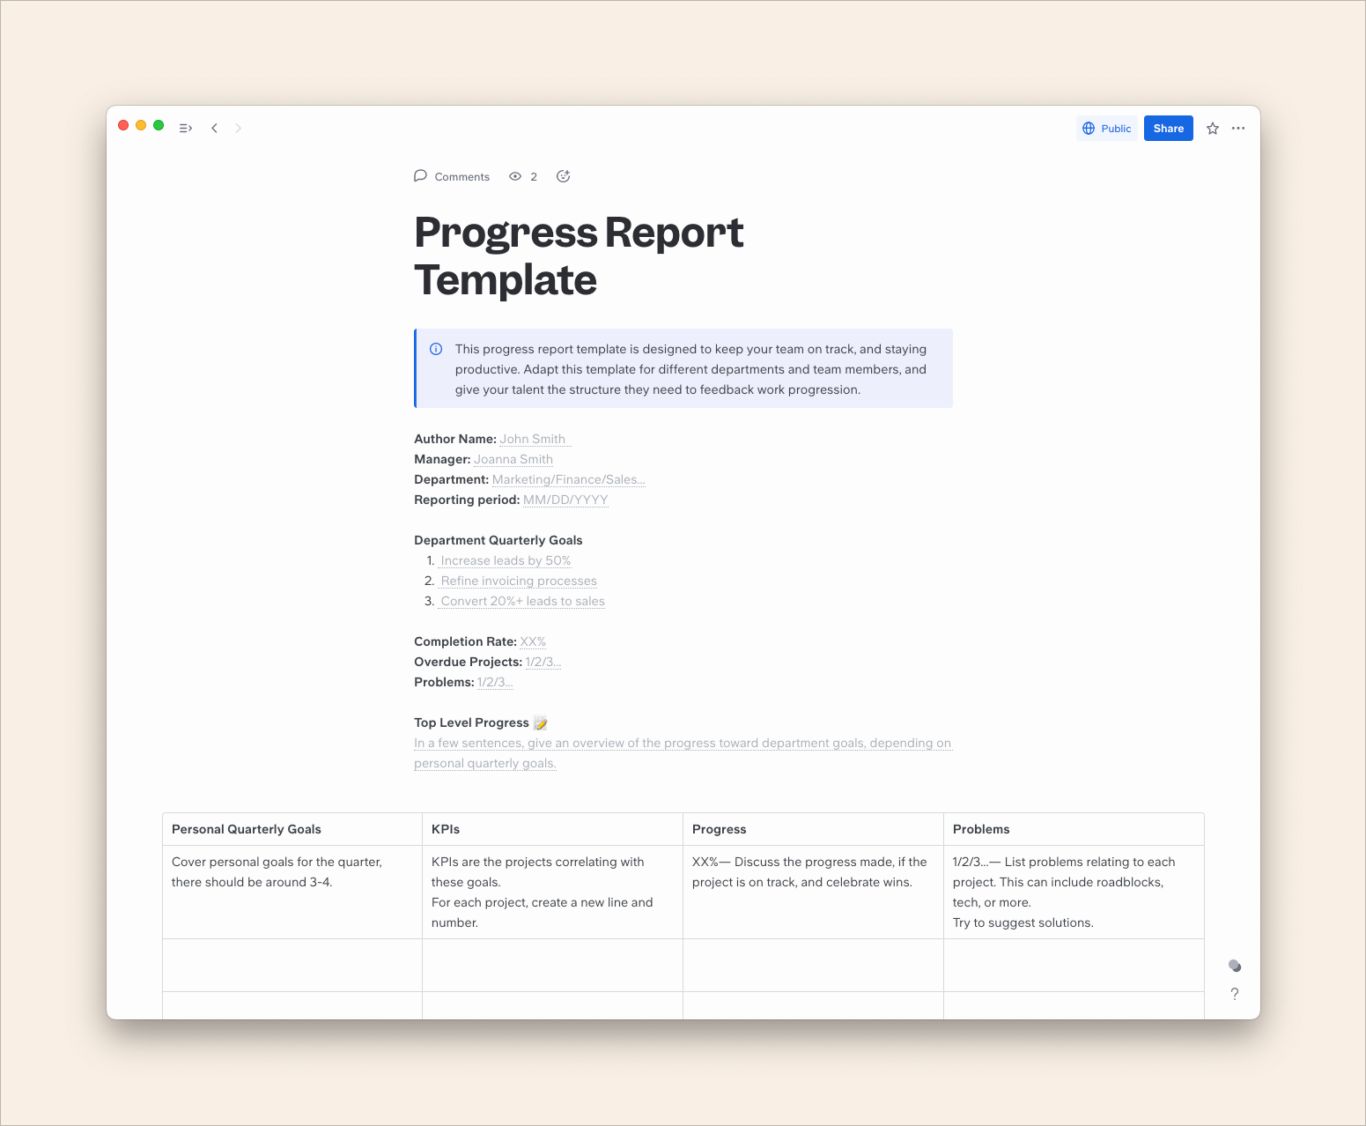 A screenshot of a progress report template.